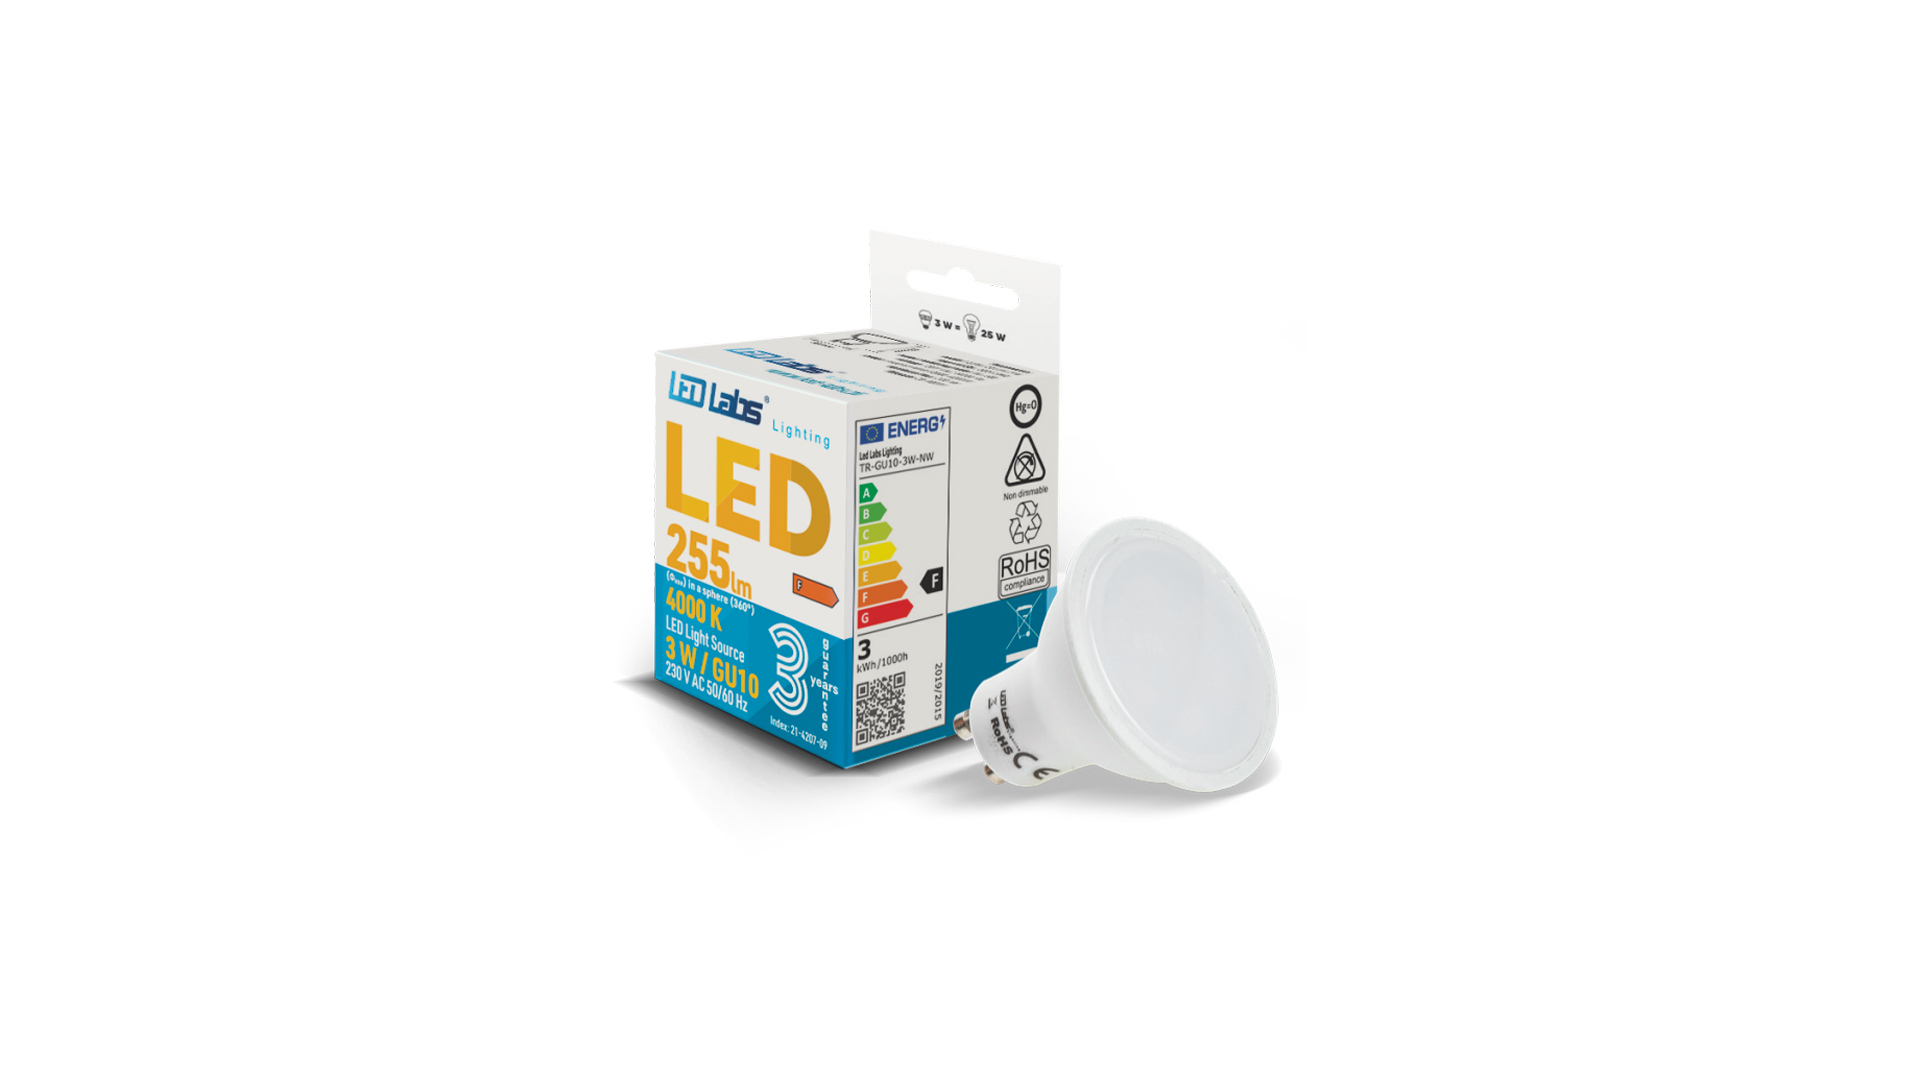 LED source GU10 3W Warm white